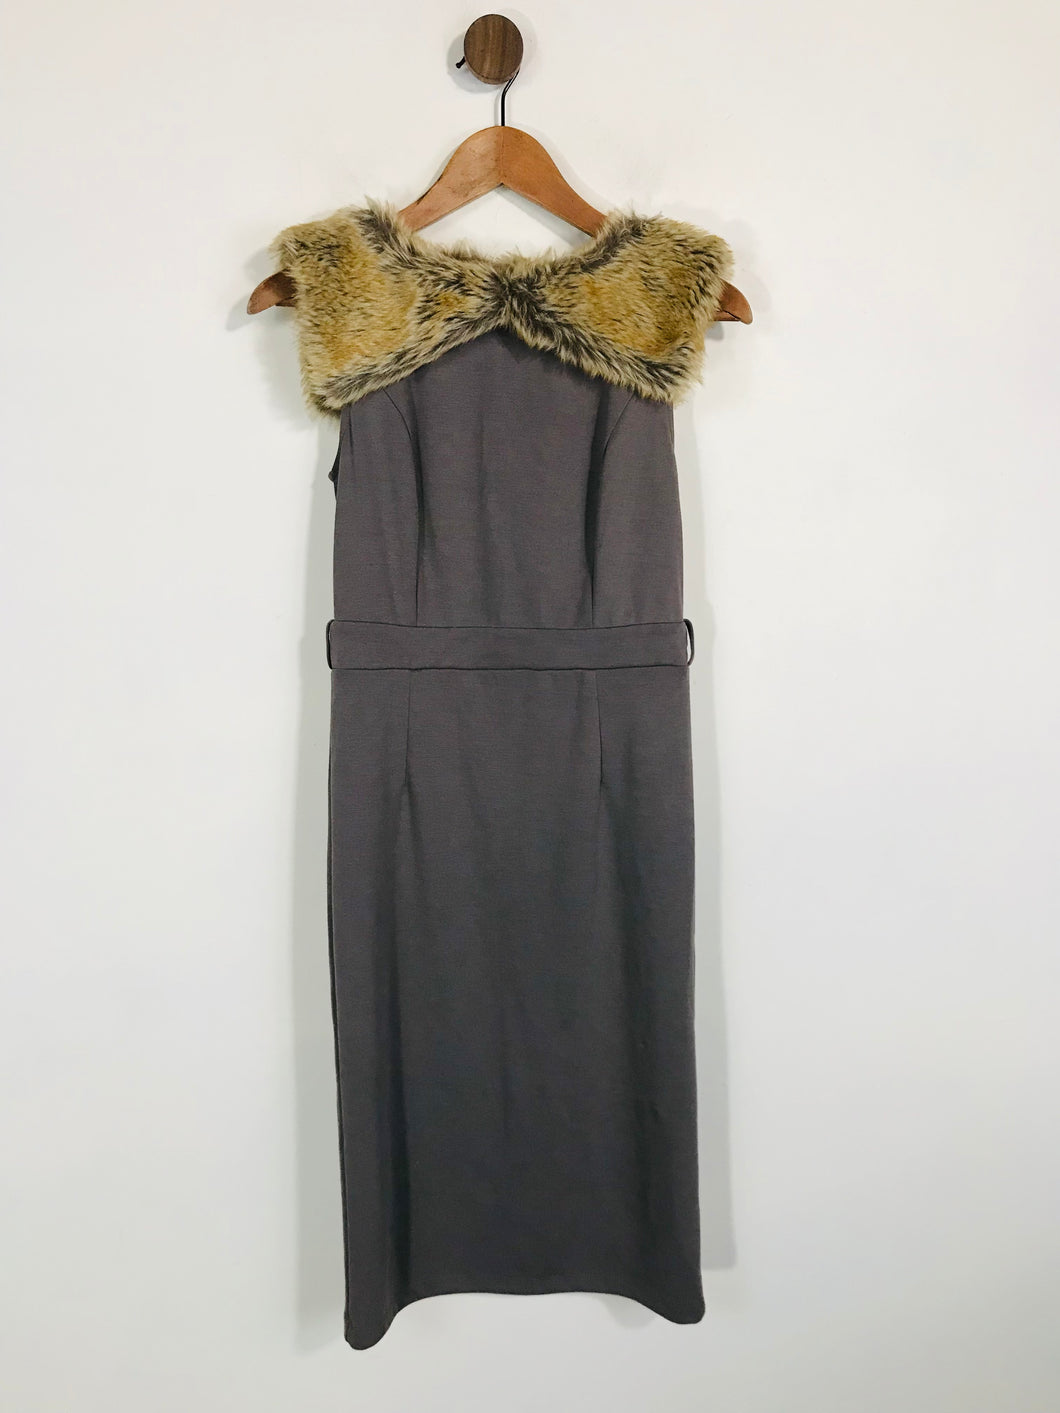 Myleen Klass Women's Fur collar Bodycon Dress | UK8 | Brown